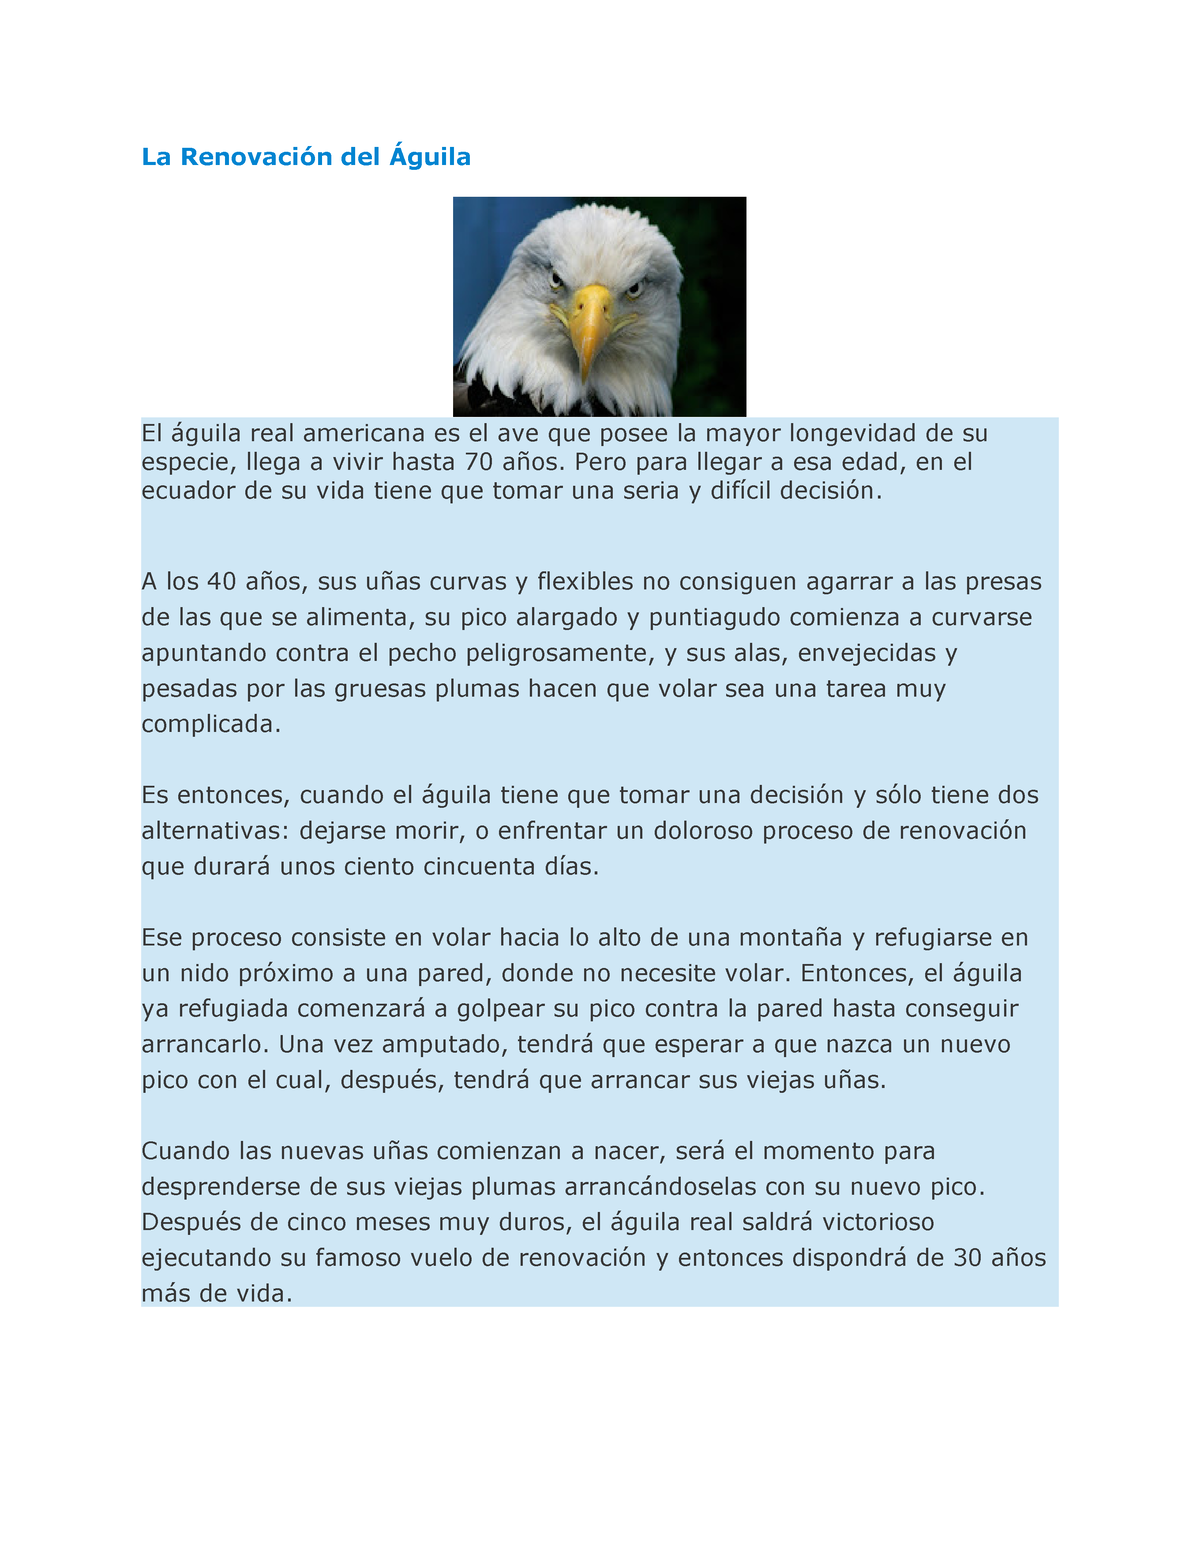 La Renovación del Águila - La Renovación del Águila El águila real  americana es el ave que posee la - Studocu